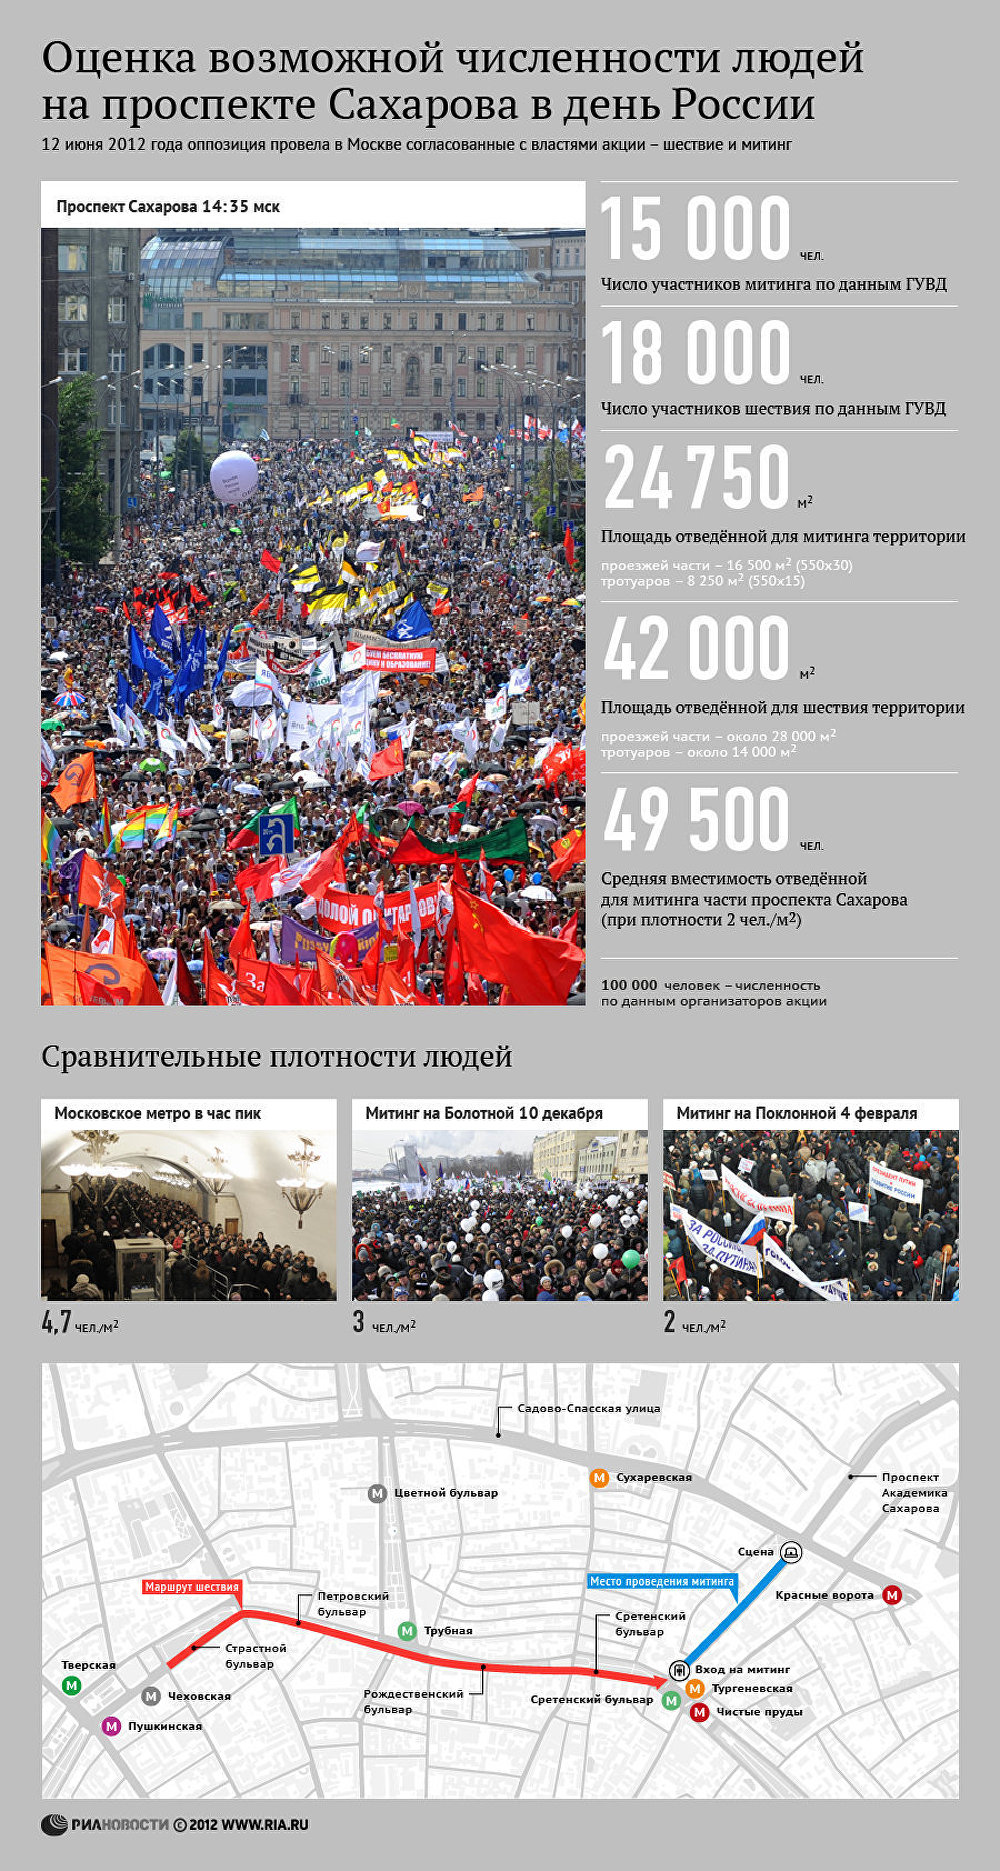 Оценка возможной численности людей на проспекте Сахарова в День России